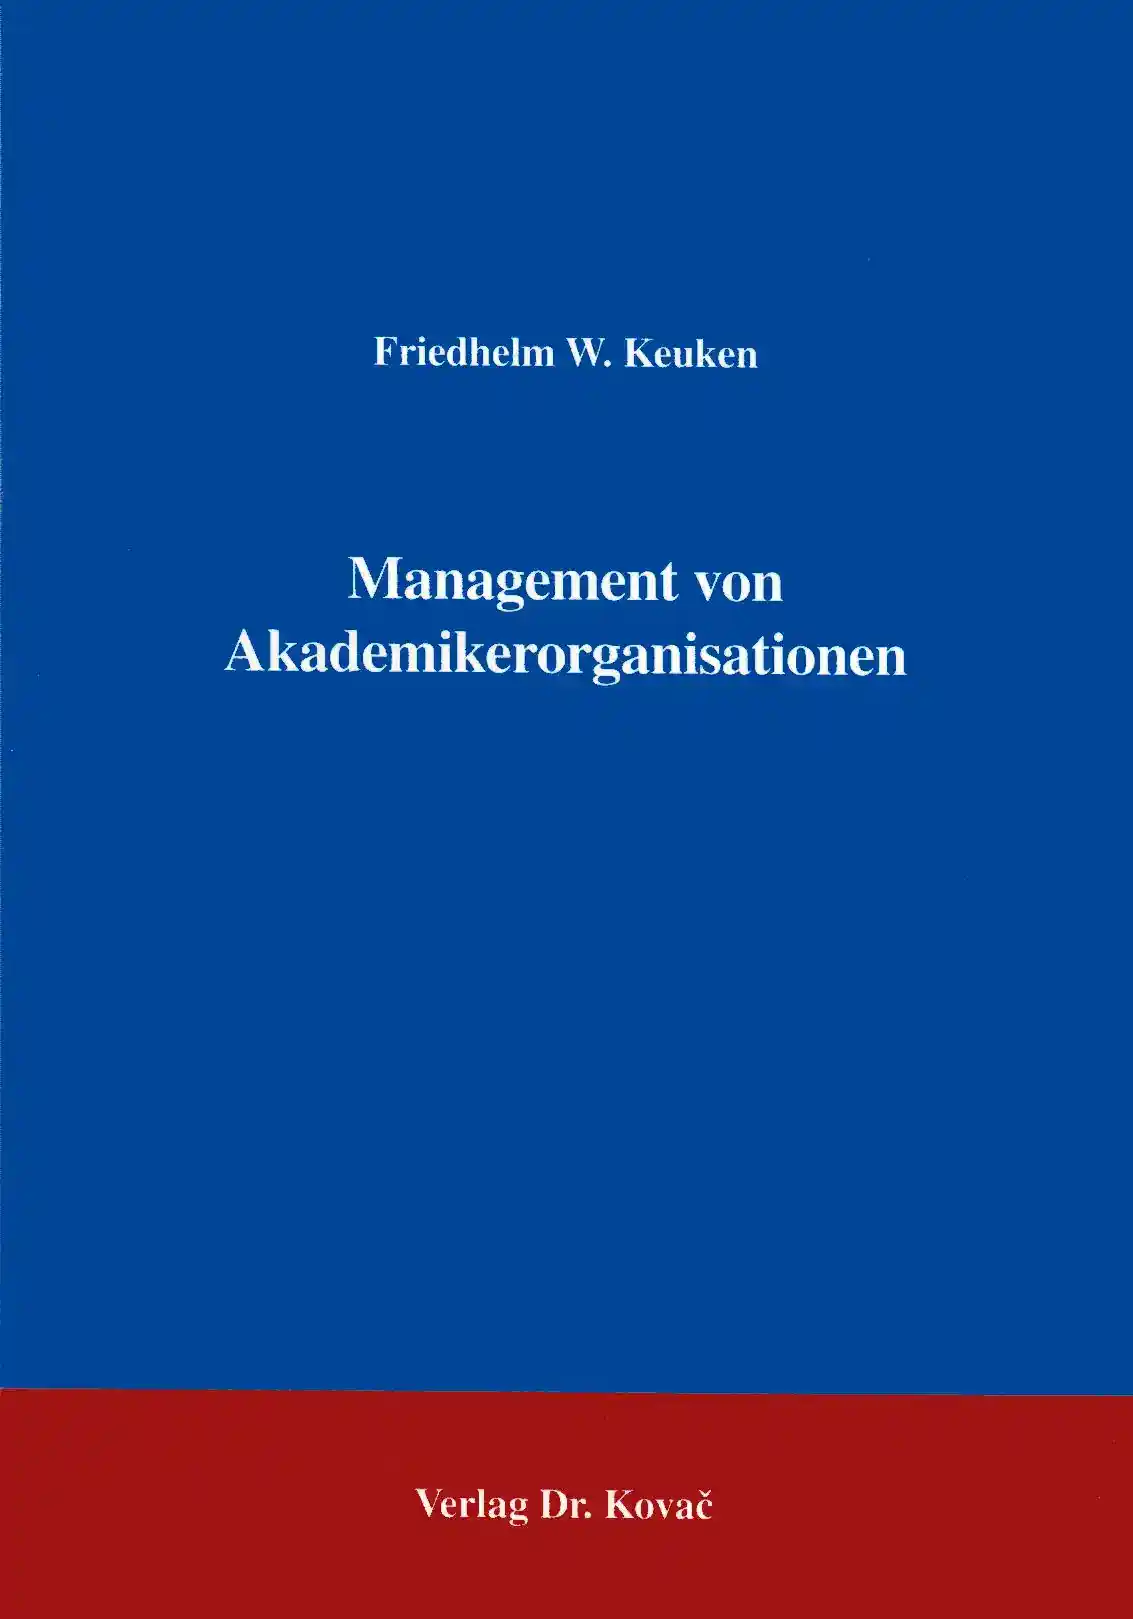 Management von Akademikerorganisationen (Forschungsarbeit)